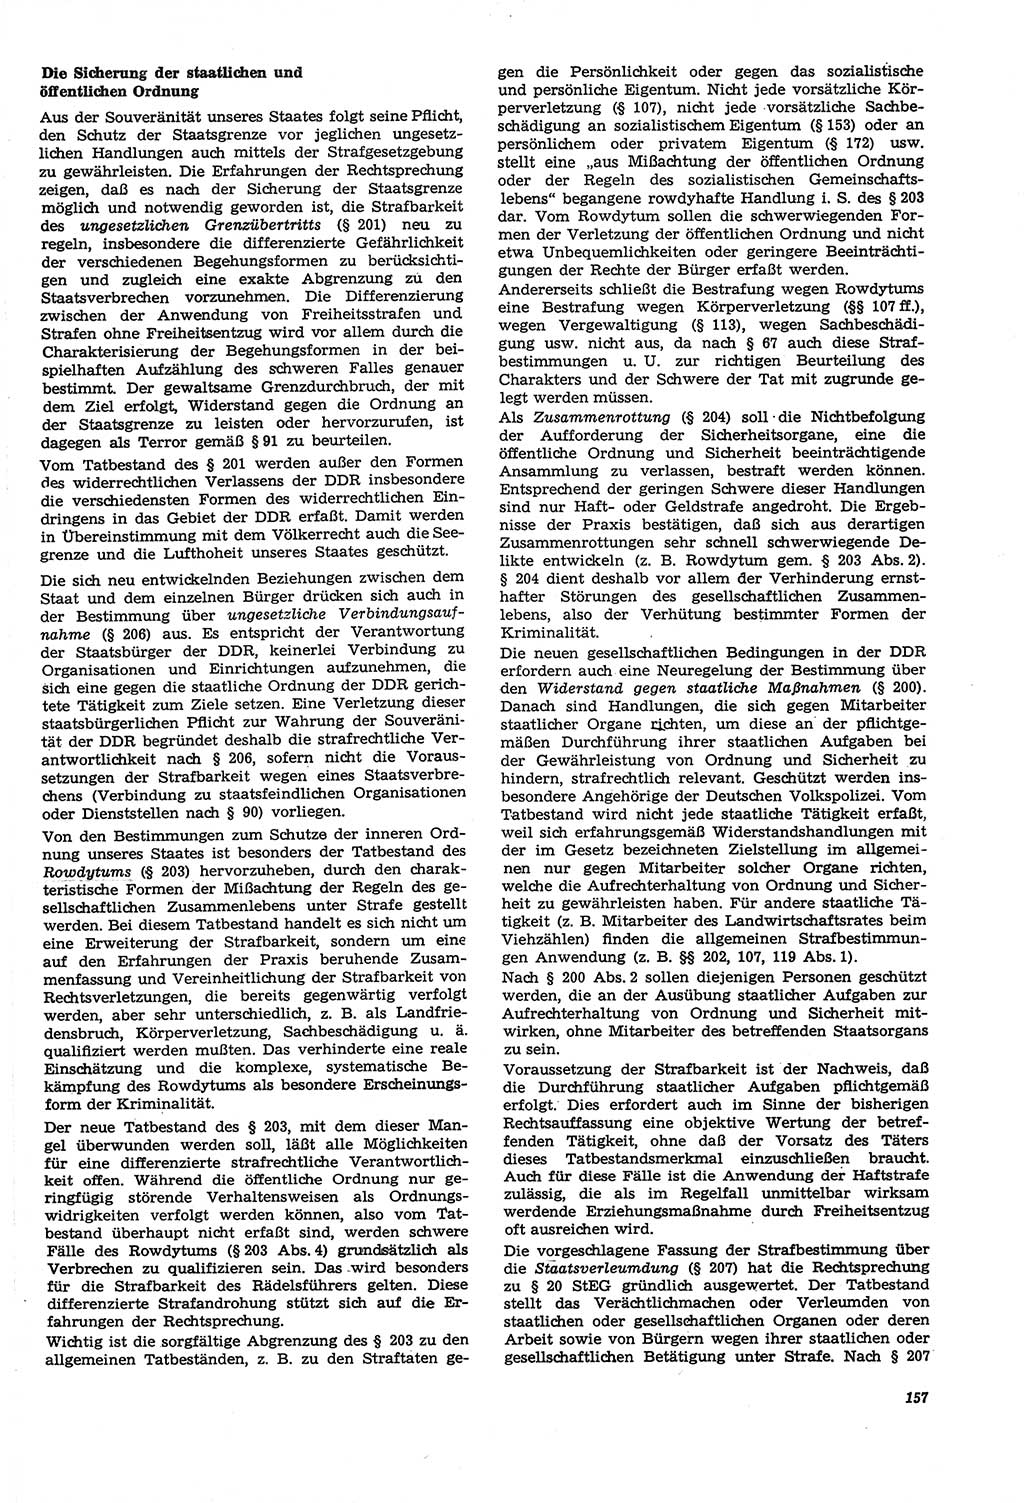 Neue Justiz (NJ), Zeitschrift für Recht und Rechtswissenschaft [Deutsche Demokratische Republik (DDR)], 21. Jahrgang 1967, Seite 157 (NJ DDR 1967, S. 157)